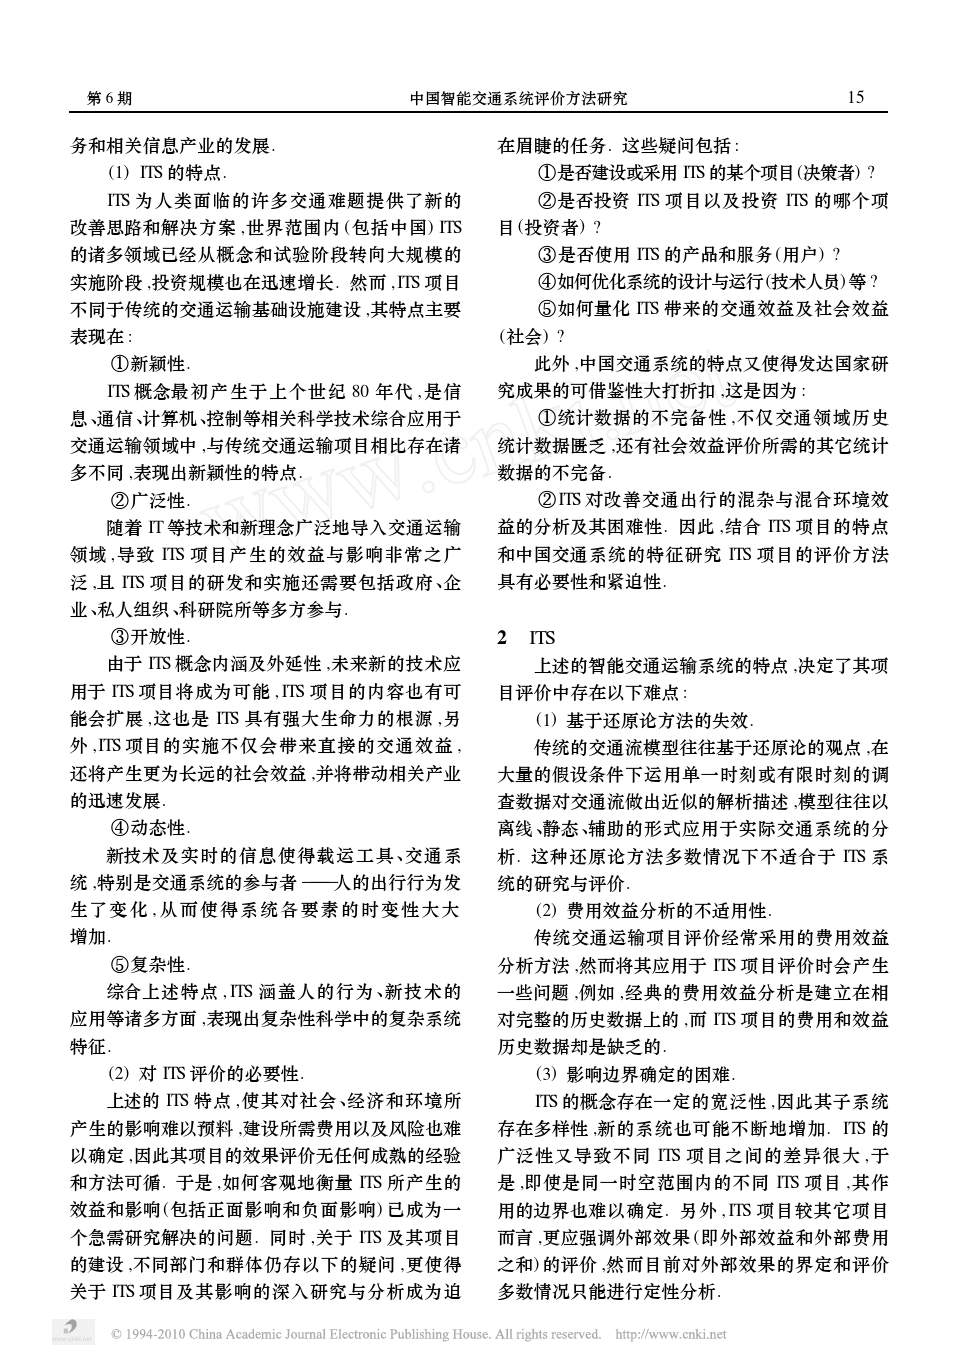 中国智能交通系统评价方法研究_杨晓光